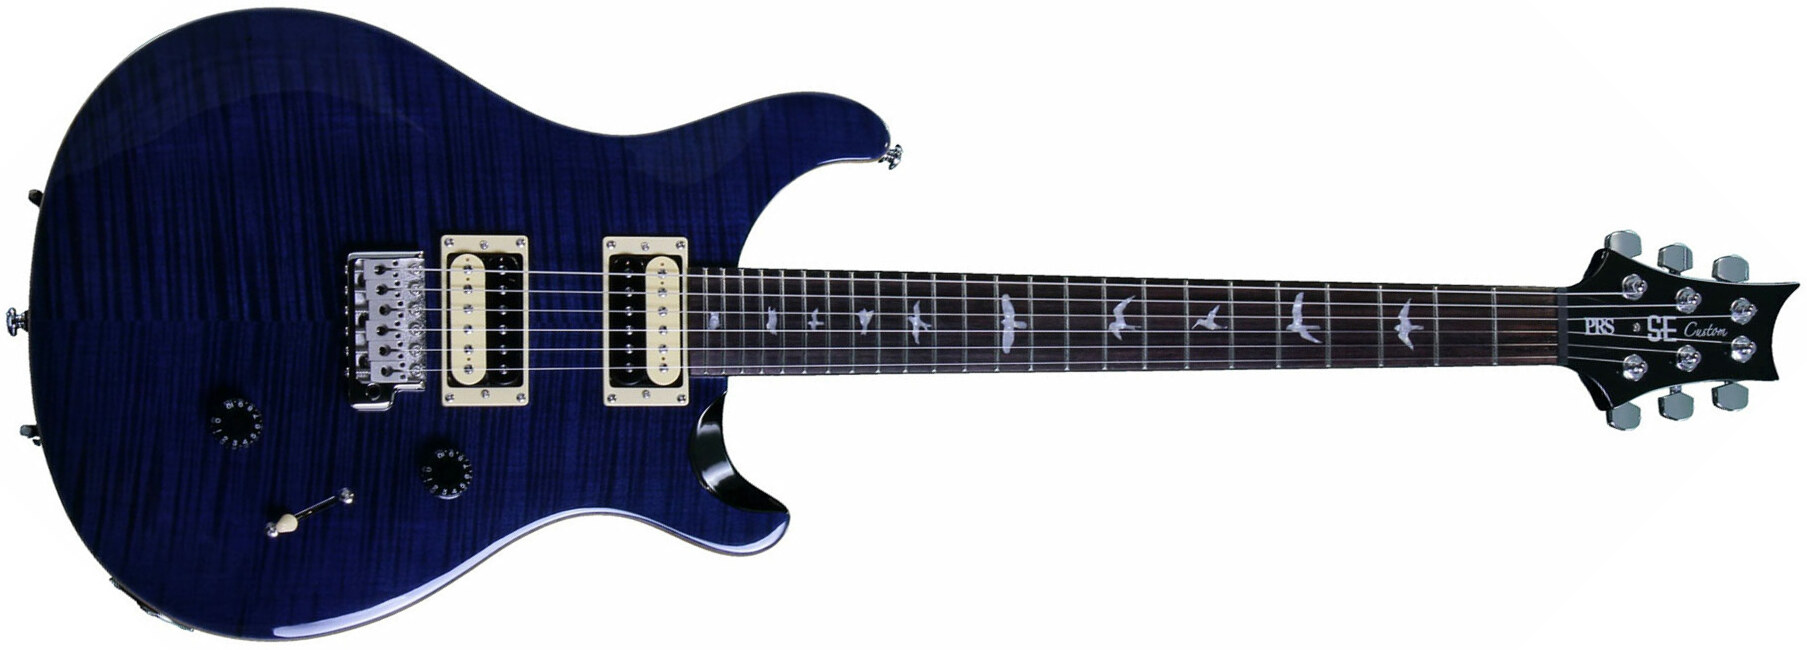 Prs Se Custom 24 2018 Hh Trem Rw - Whale Blue - Double cut electric guitar - Main picture